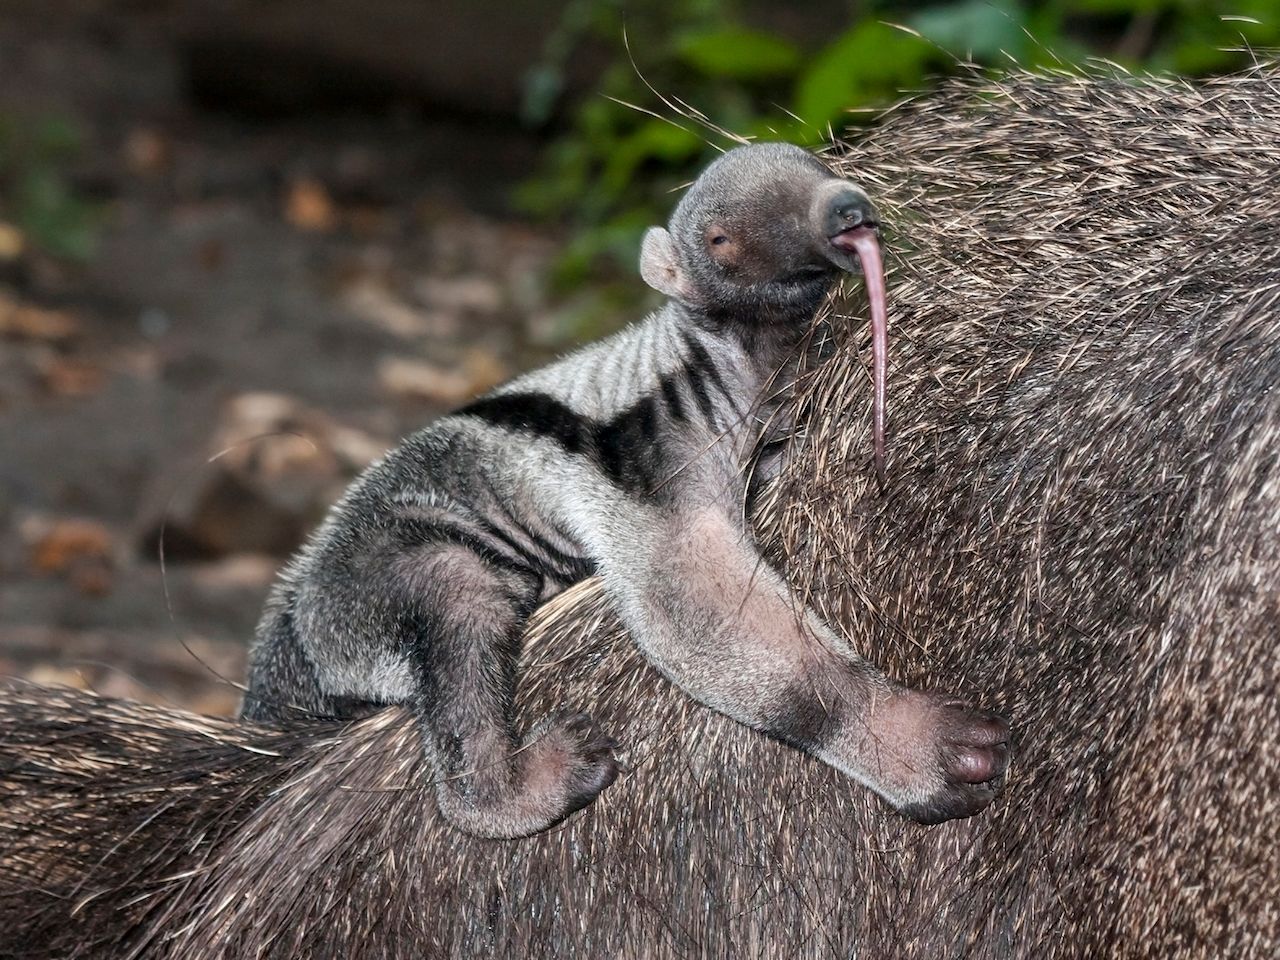 Der Nachwuchs des Großen Ameisenbären bleibt bis zu 9 Monate auf dem Rücken seiner Mutter und klettert nur zum Trinken runter. Die Ameisenbärin legt während des Säugens ihren Schwanz über das Junge, um es zu schützen. 